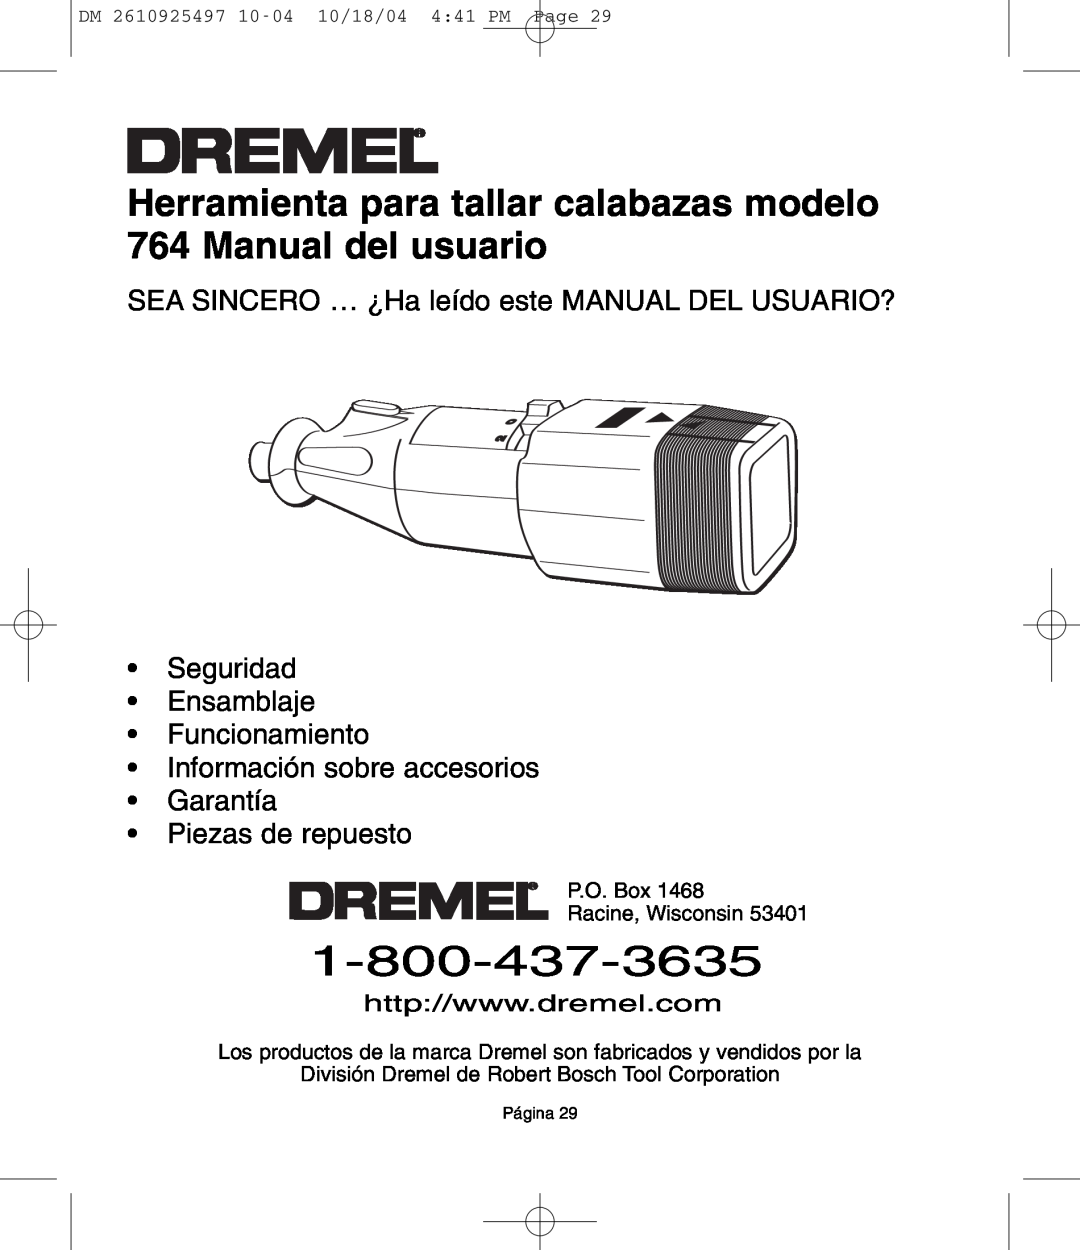 Dremel Herramienta para tallar calabazas modelo 764 Manual del usuario, Piezas de repuesto, P.O. Box Racine, Wisconsin 